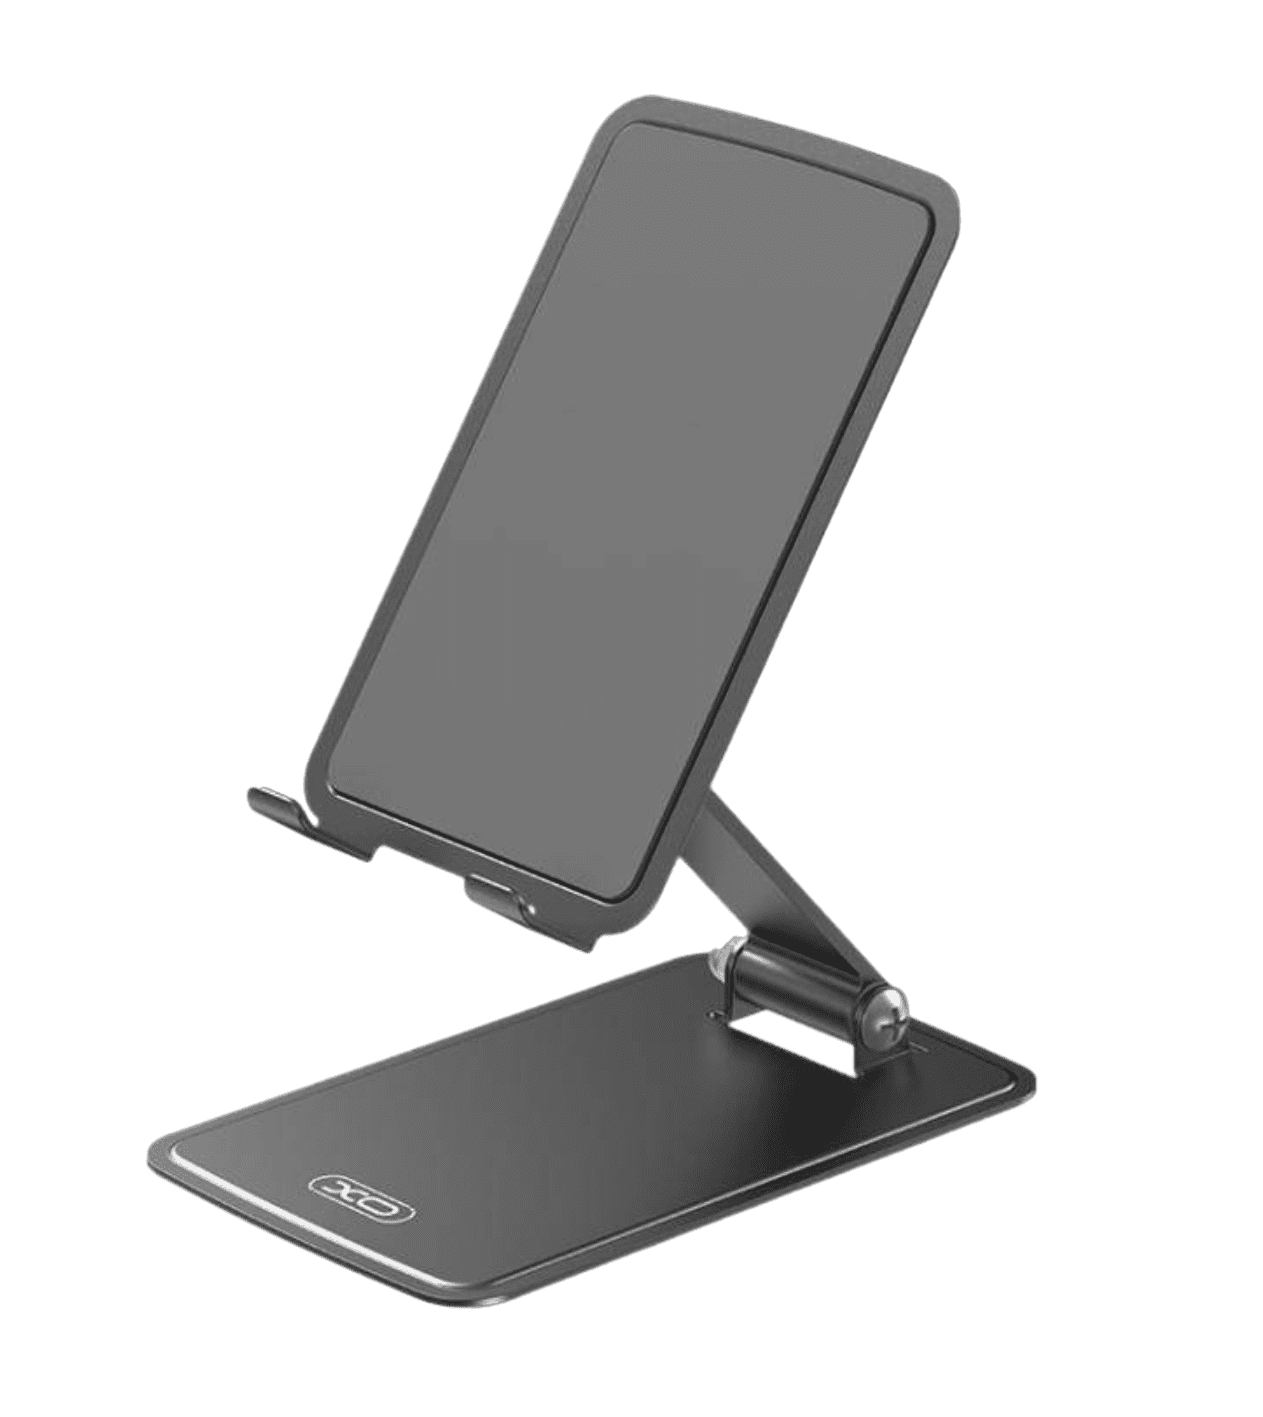 Автомобильный держатель для телефона XO-C135 Foldable Desktop Phone Tablet Holder Black